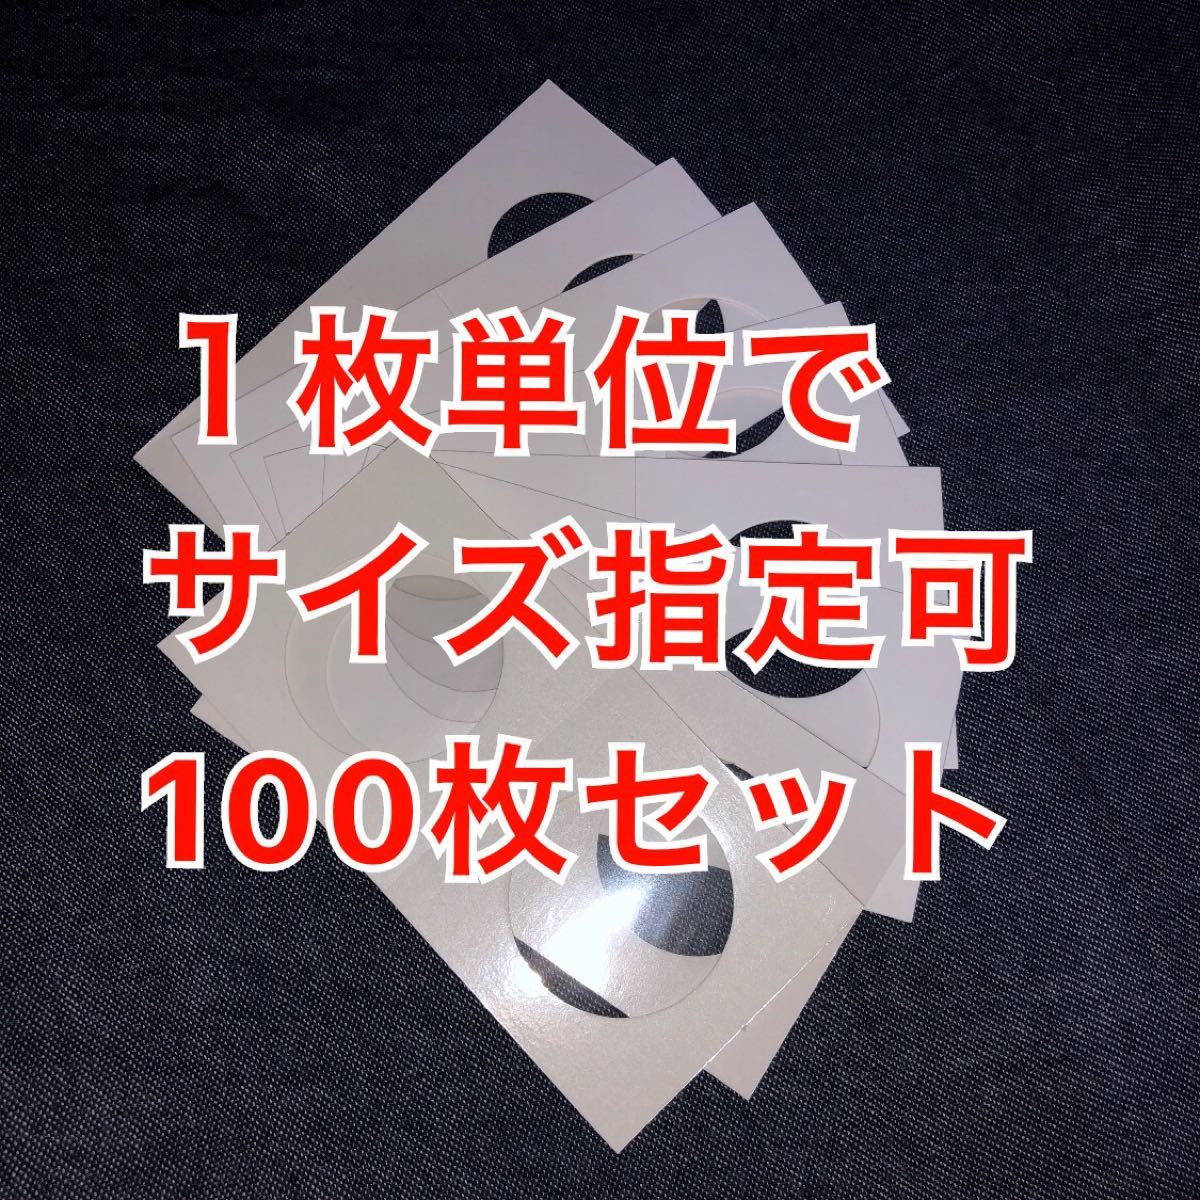 【新品】ペーパーコインホルダー 100枚セット 記念硬貨 旧硬貨 記念メダル用